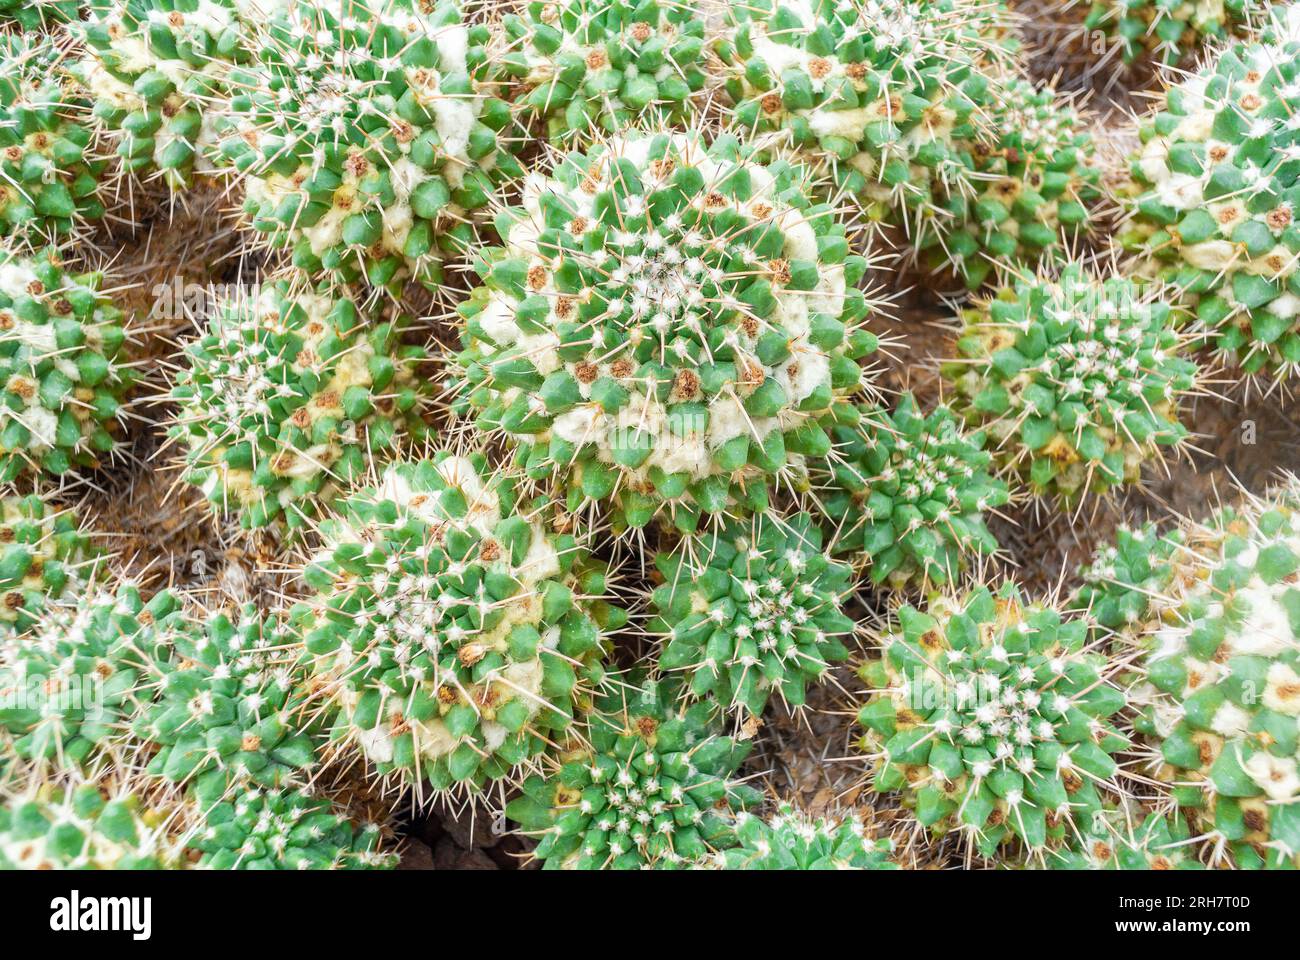 Mammillaria ist eine der größten Gattungen in der Kaktusfamilie (Cactaceae), mit derzeit 200 bekannten Arten und Sorten. Stockfoto